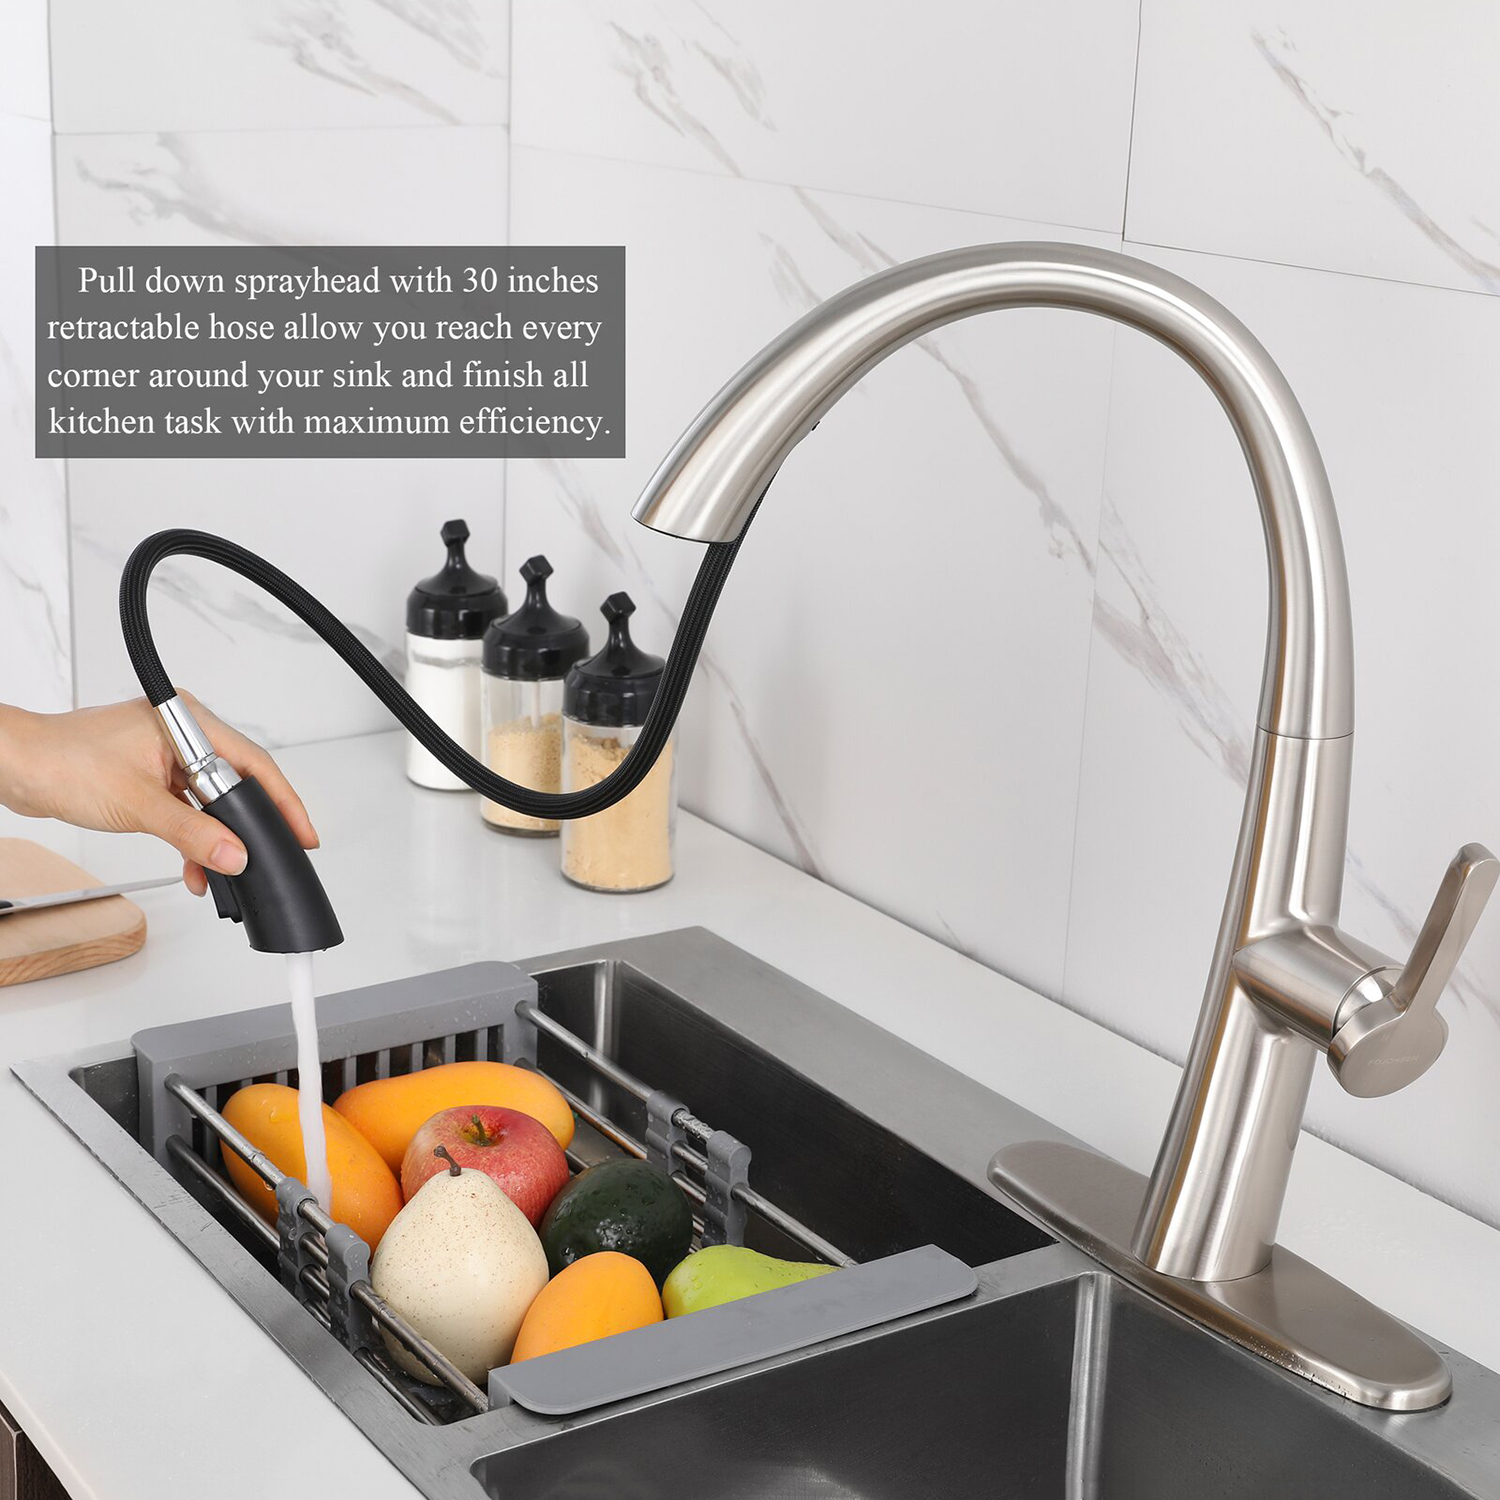 El grifo de cocina Aquacubic con rociador desplegable ofrece una limpieza eficiente del grifo del fregadero de la cocina